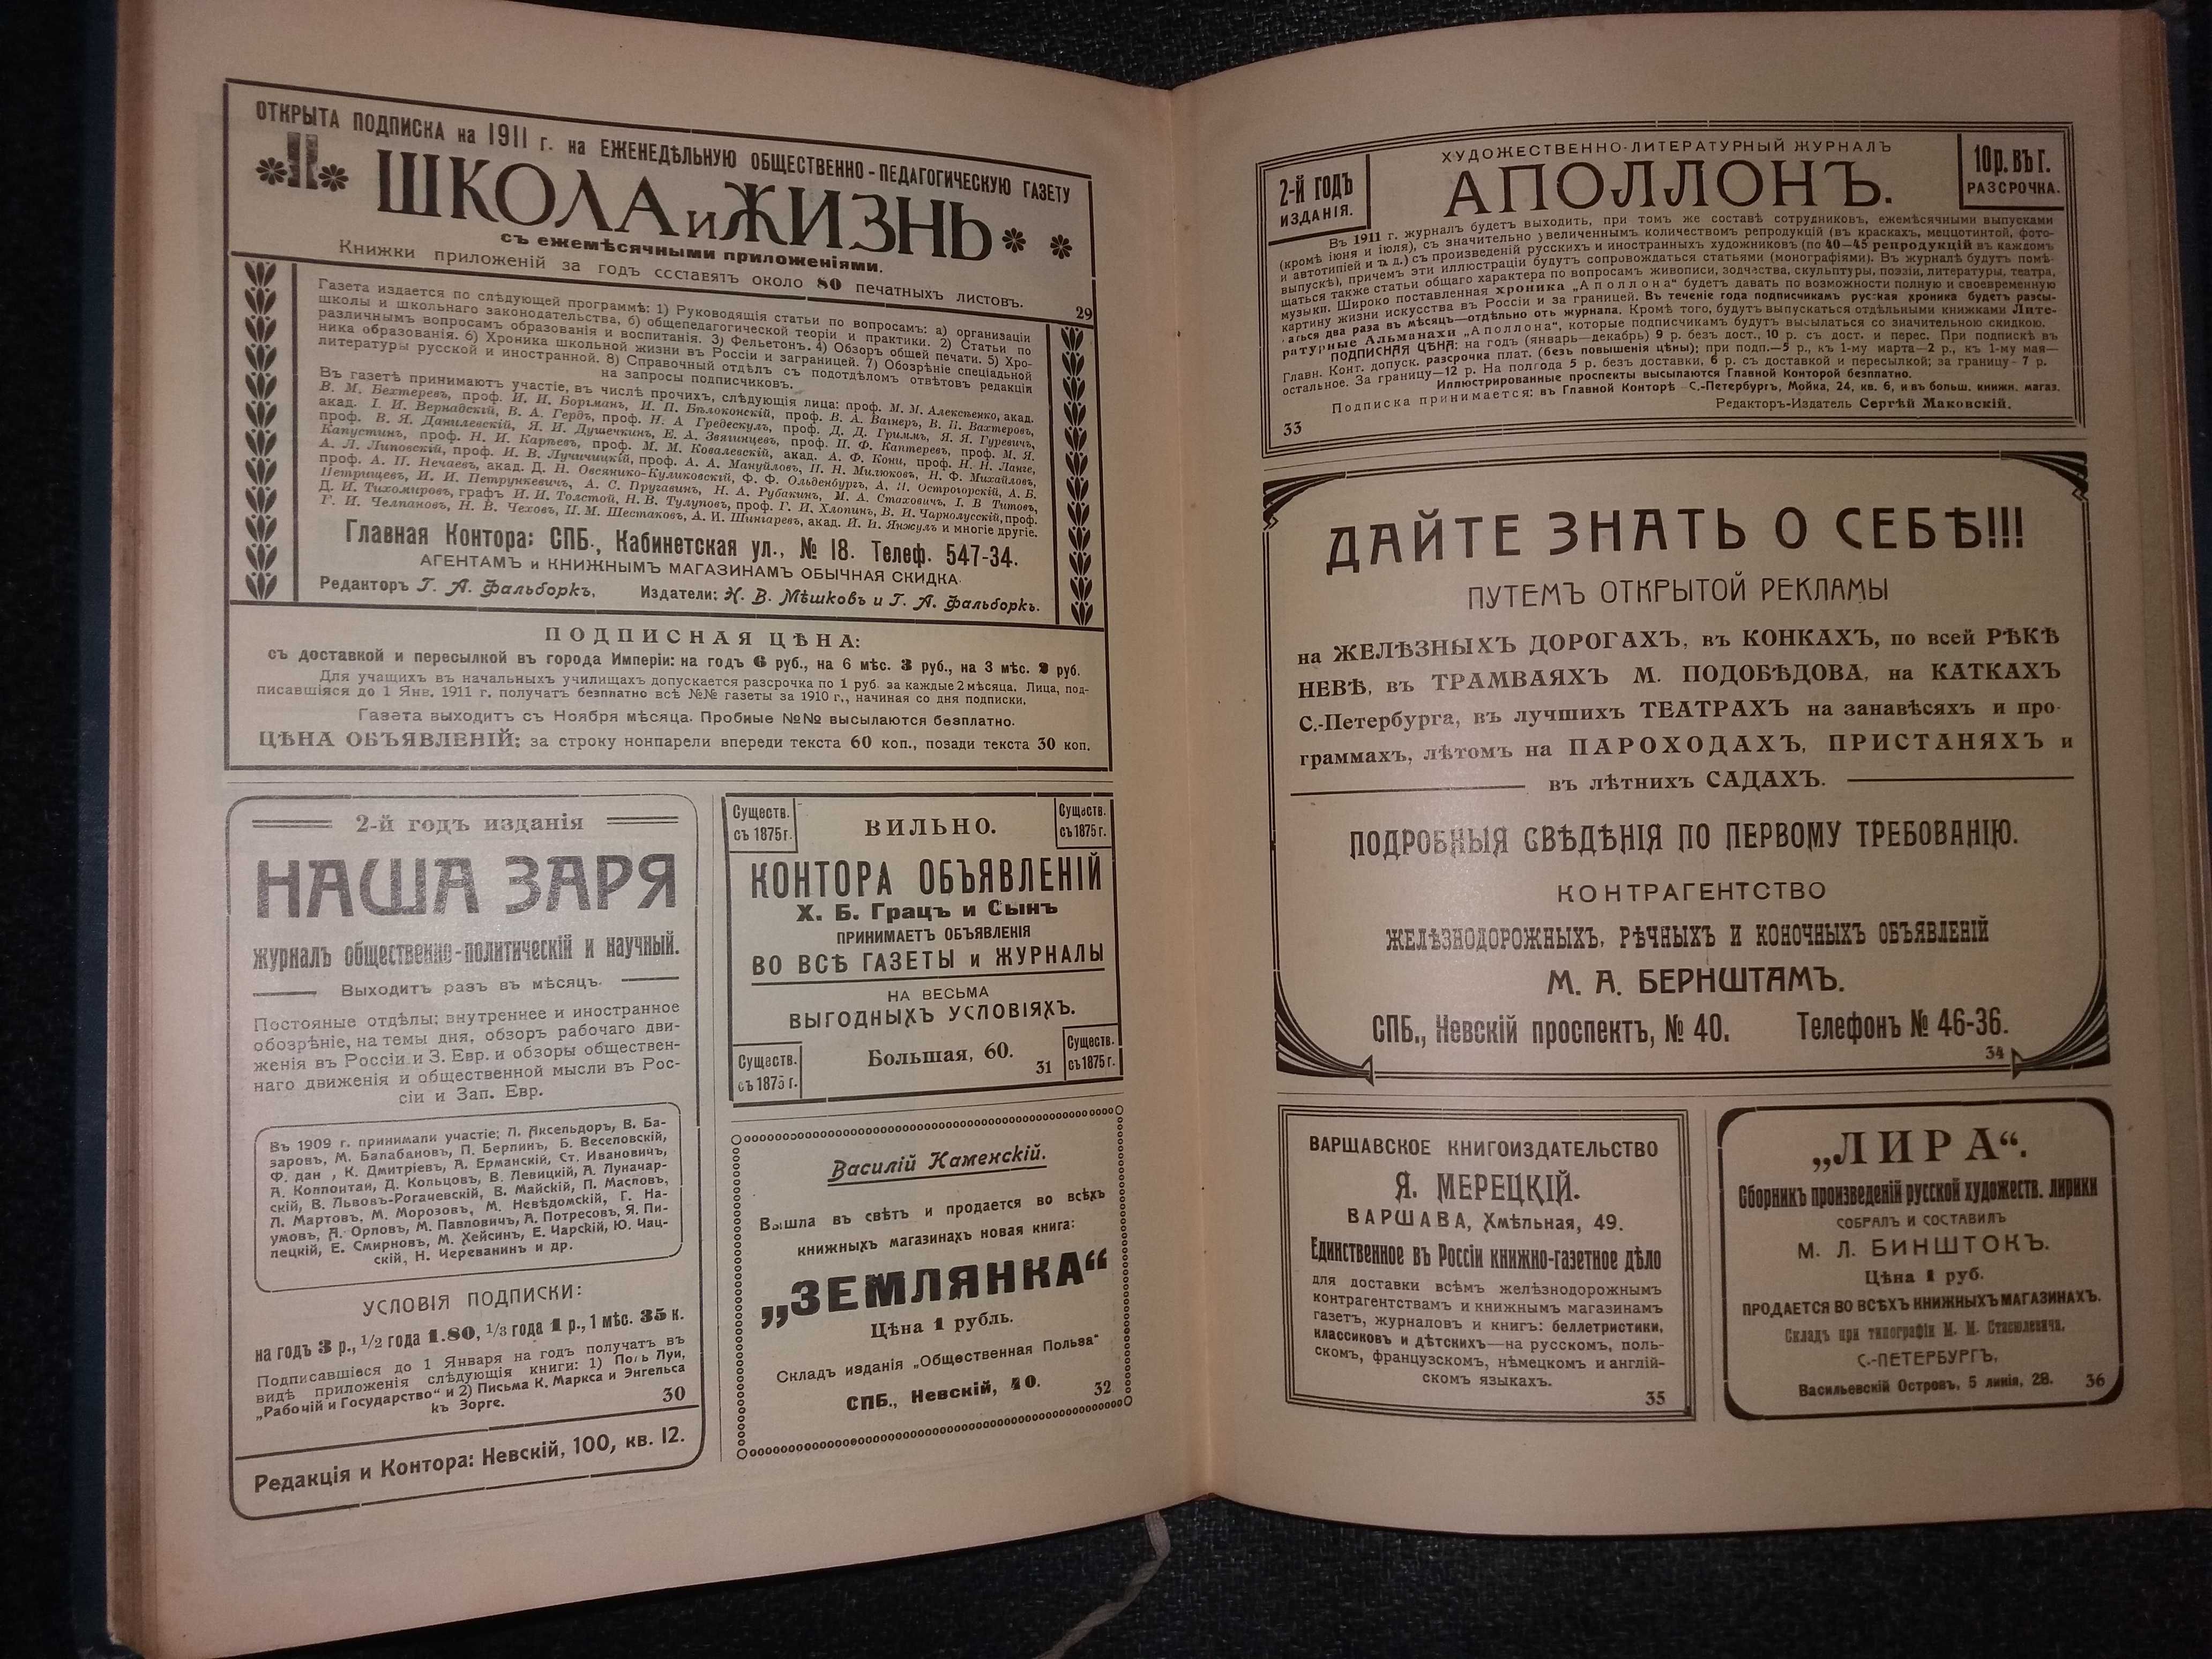 Газетный мир: Адресная и справочная книга на 1911 год